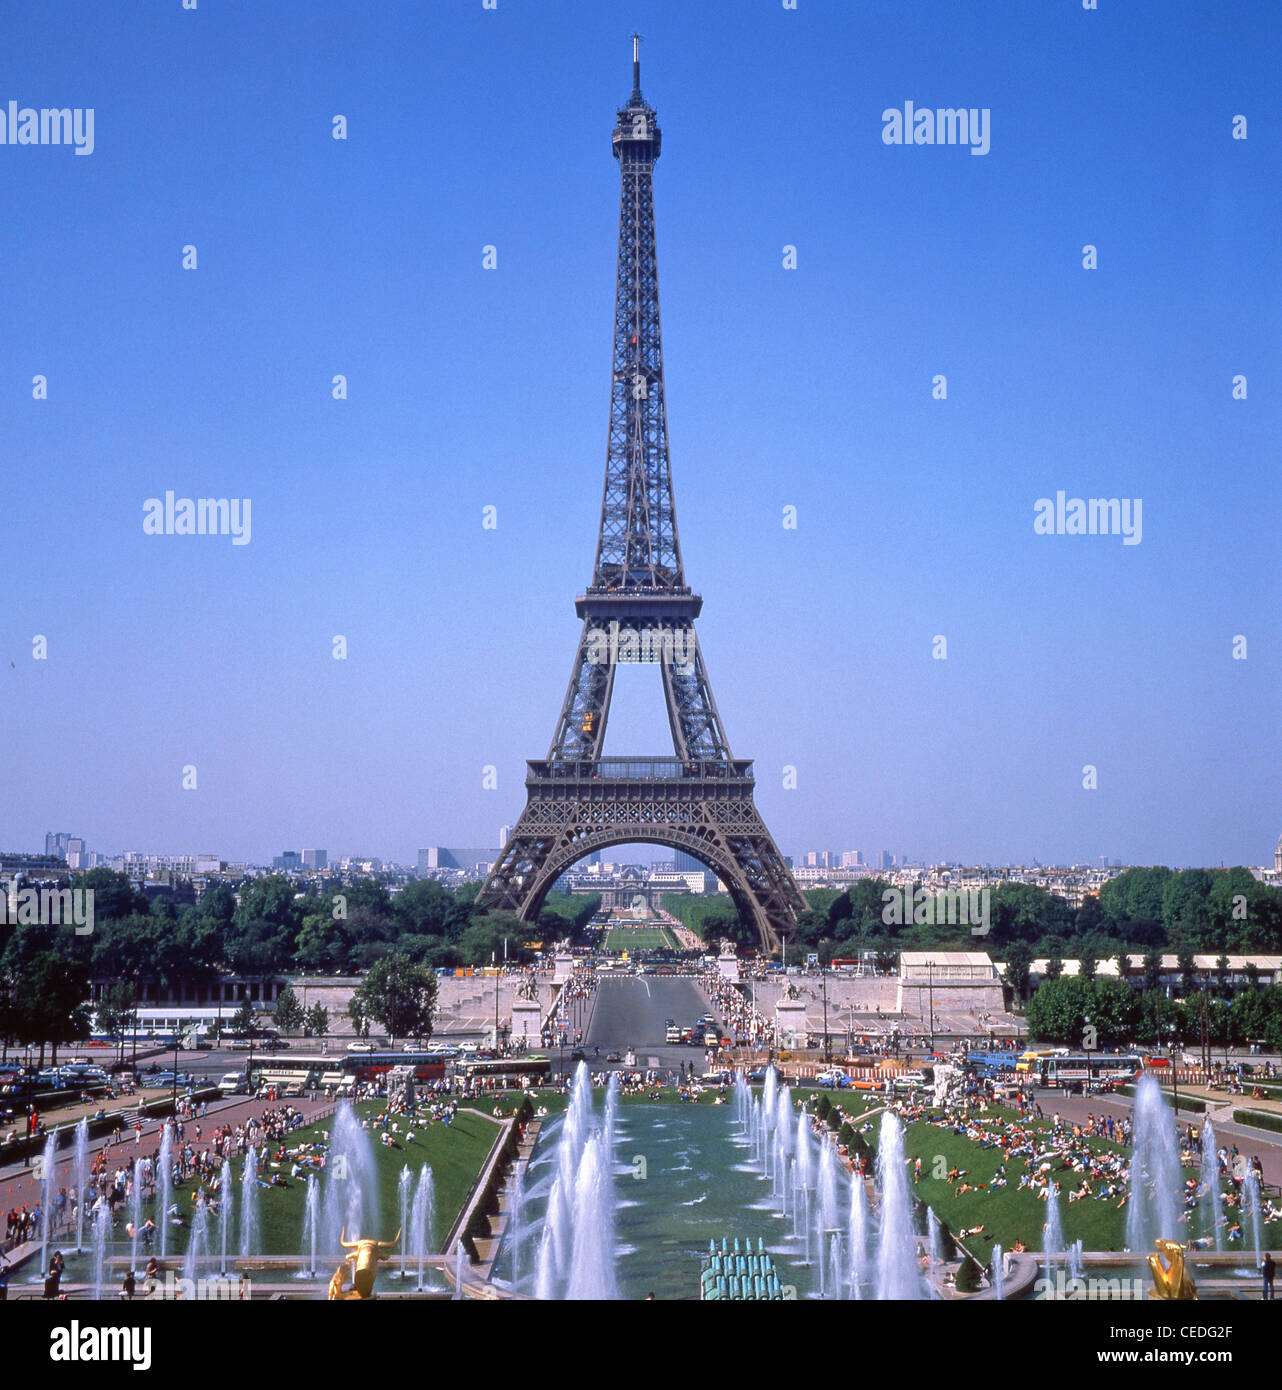 La Tour Eiffel et du parc du Champ-de-Mars du Trocadéro du Palais de Chaillot, Paris, Île-de-France, France Banque D'Images